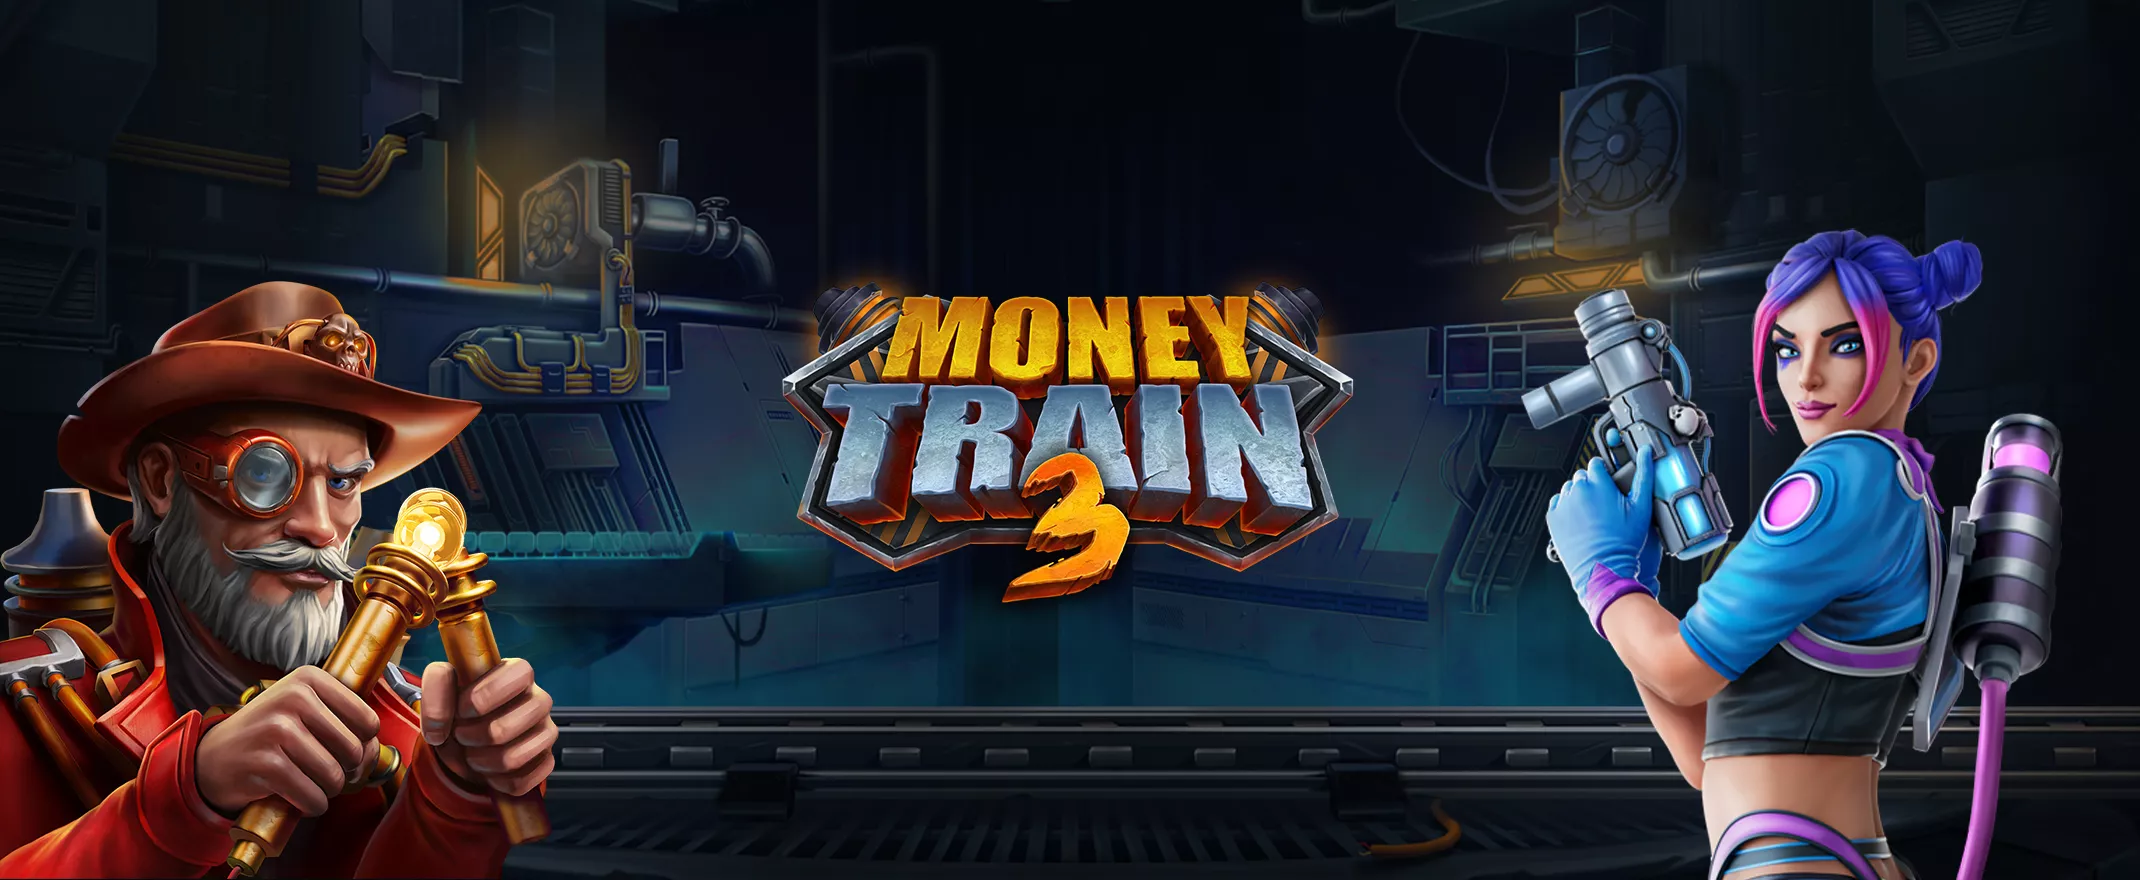 Onko Money Train 3 vuoden 2022 kovin pelijulkaisu?